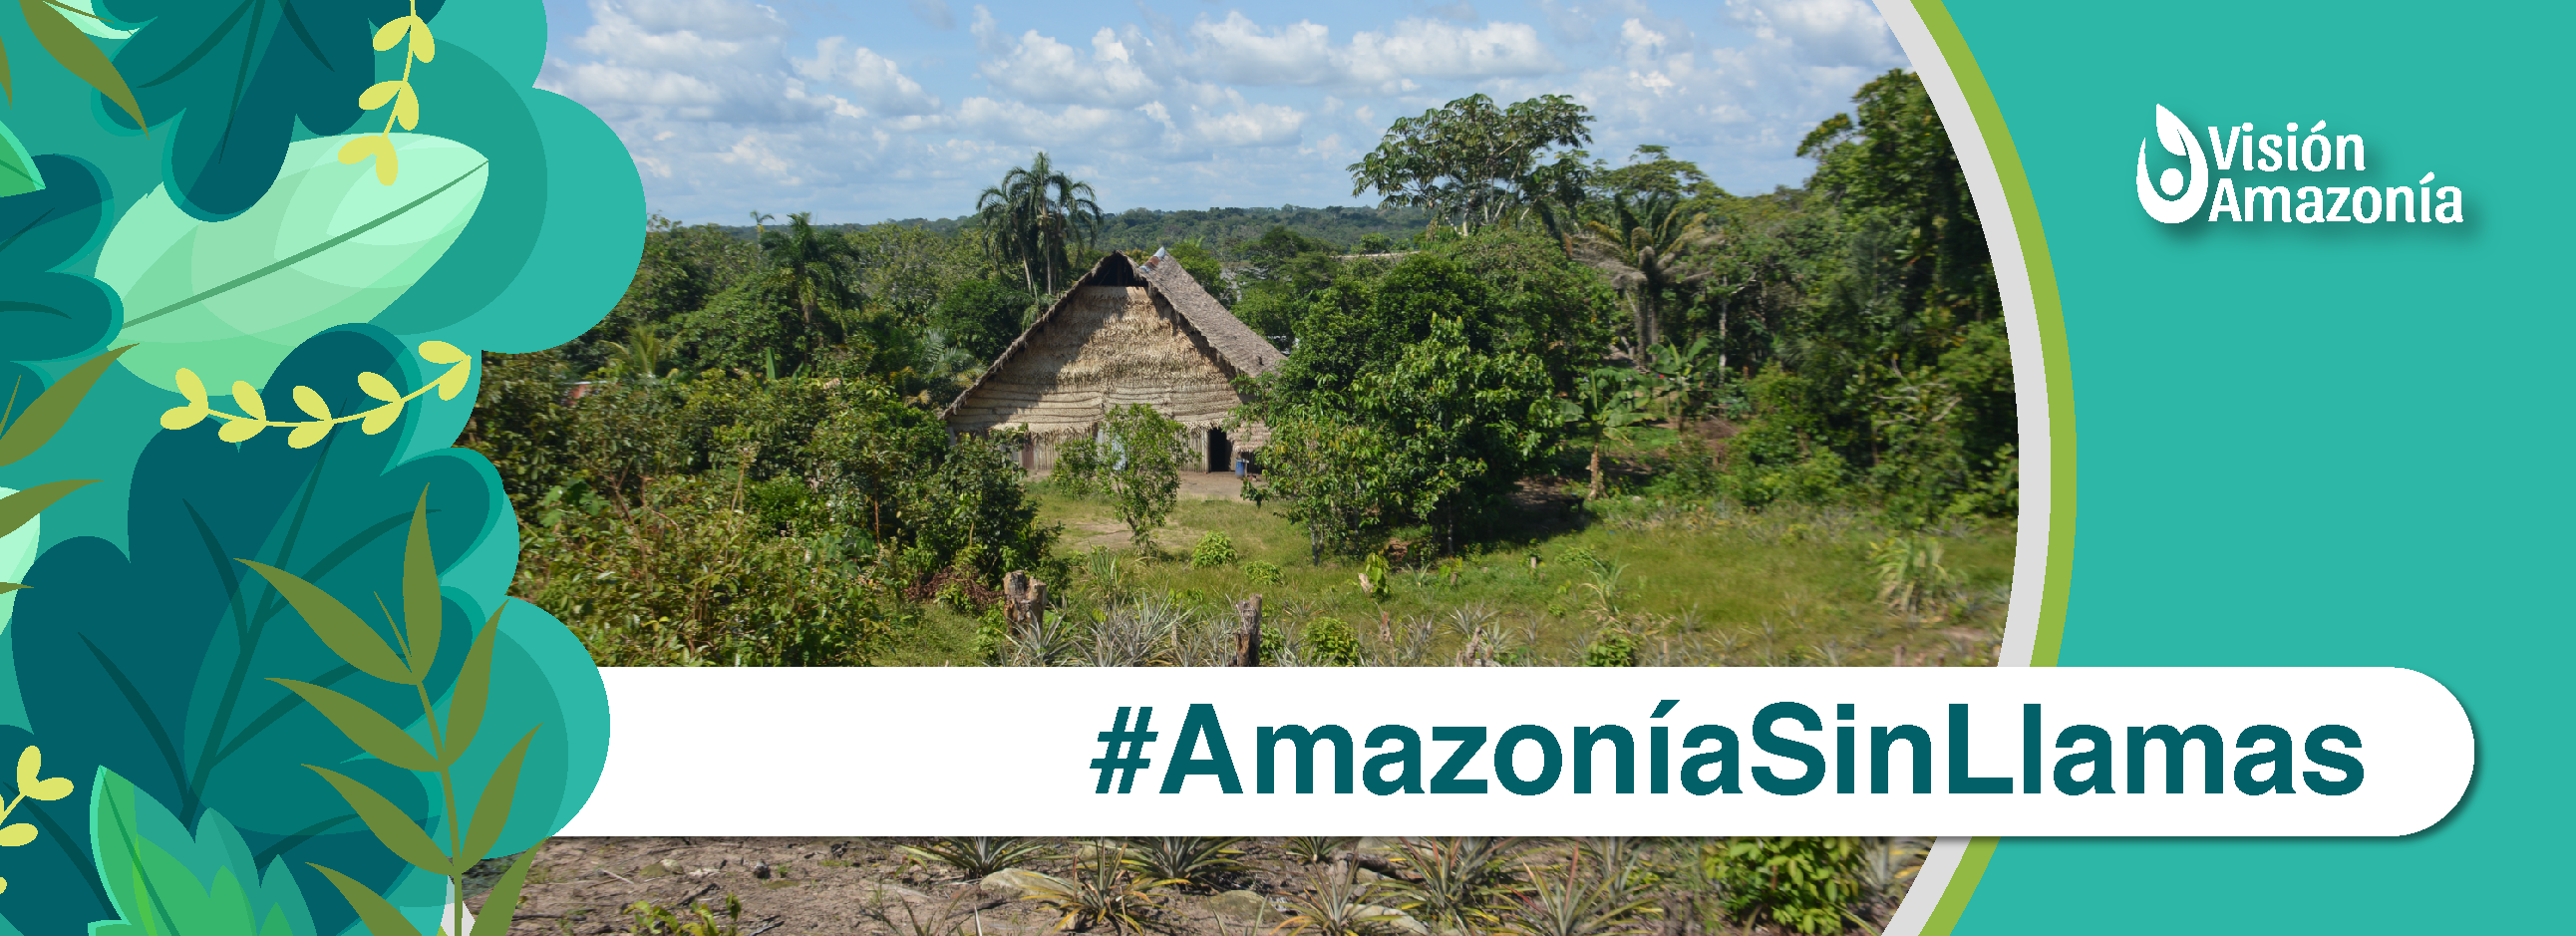 Amazonía sin llamas.